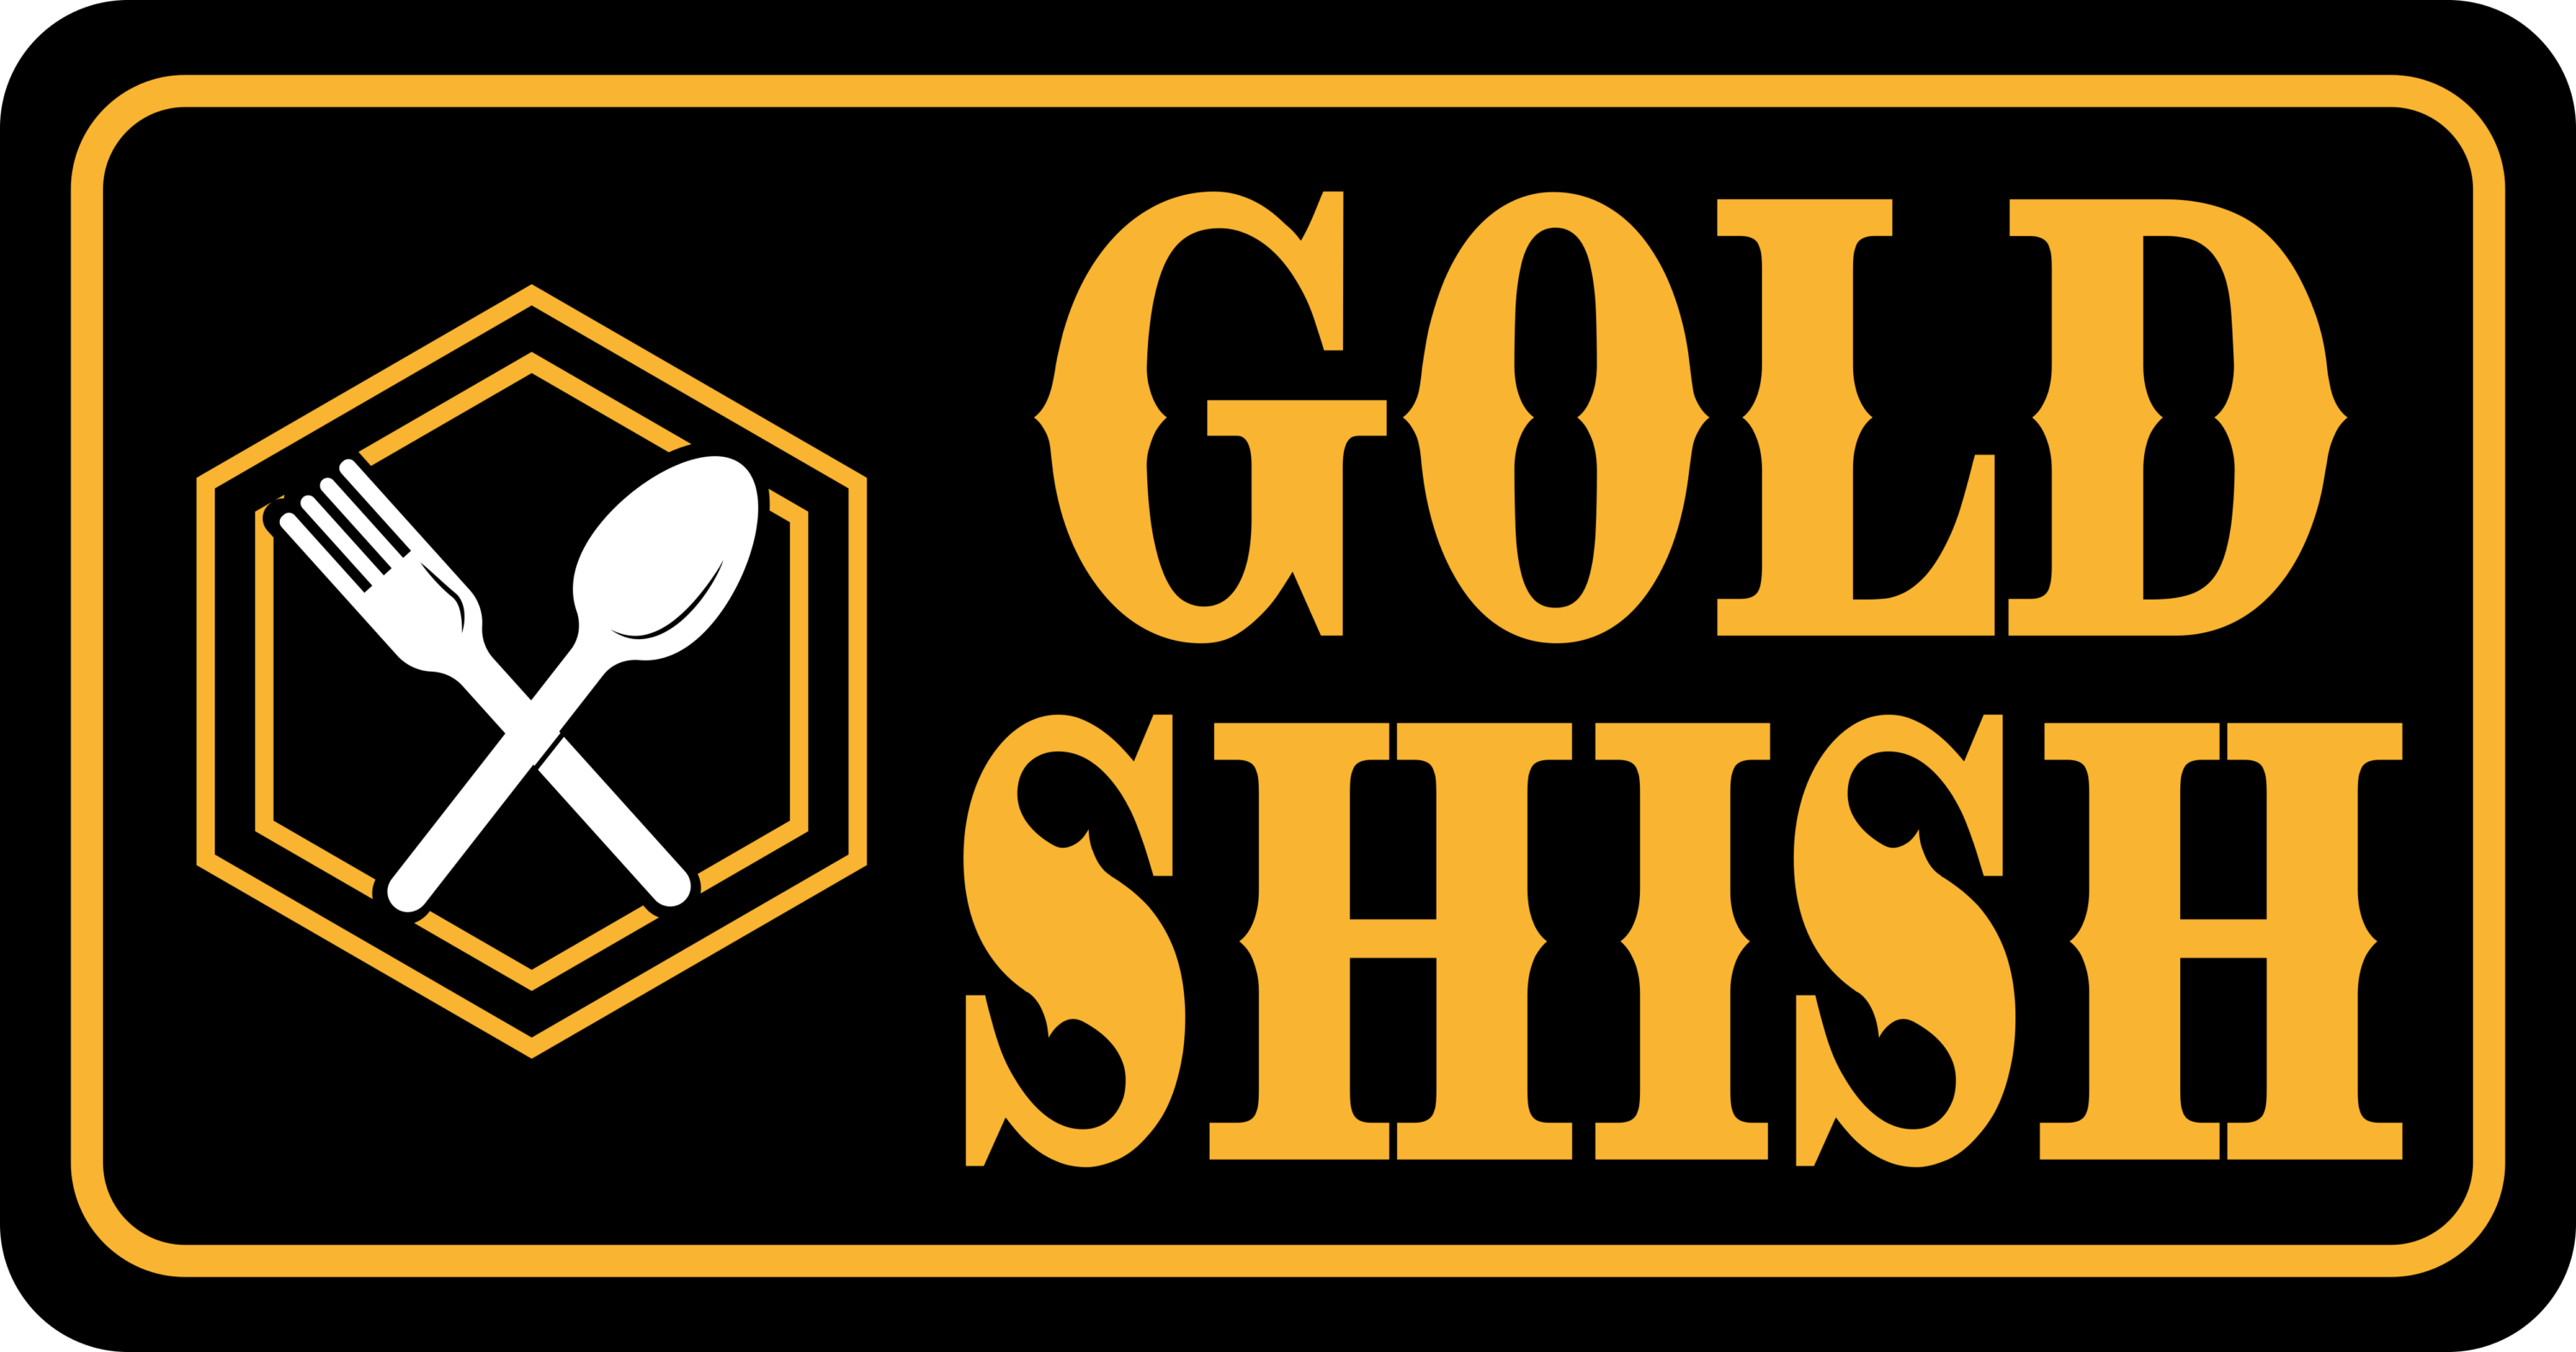 Gold Shish Logo